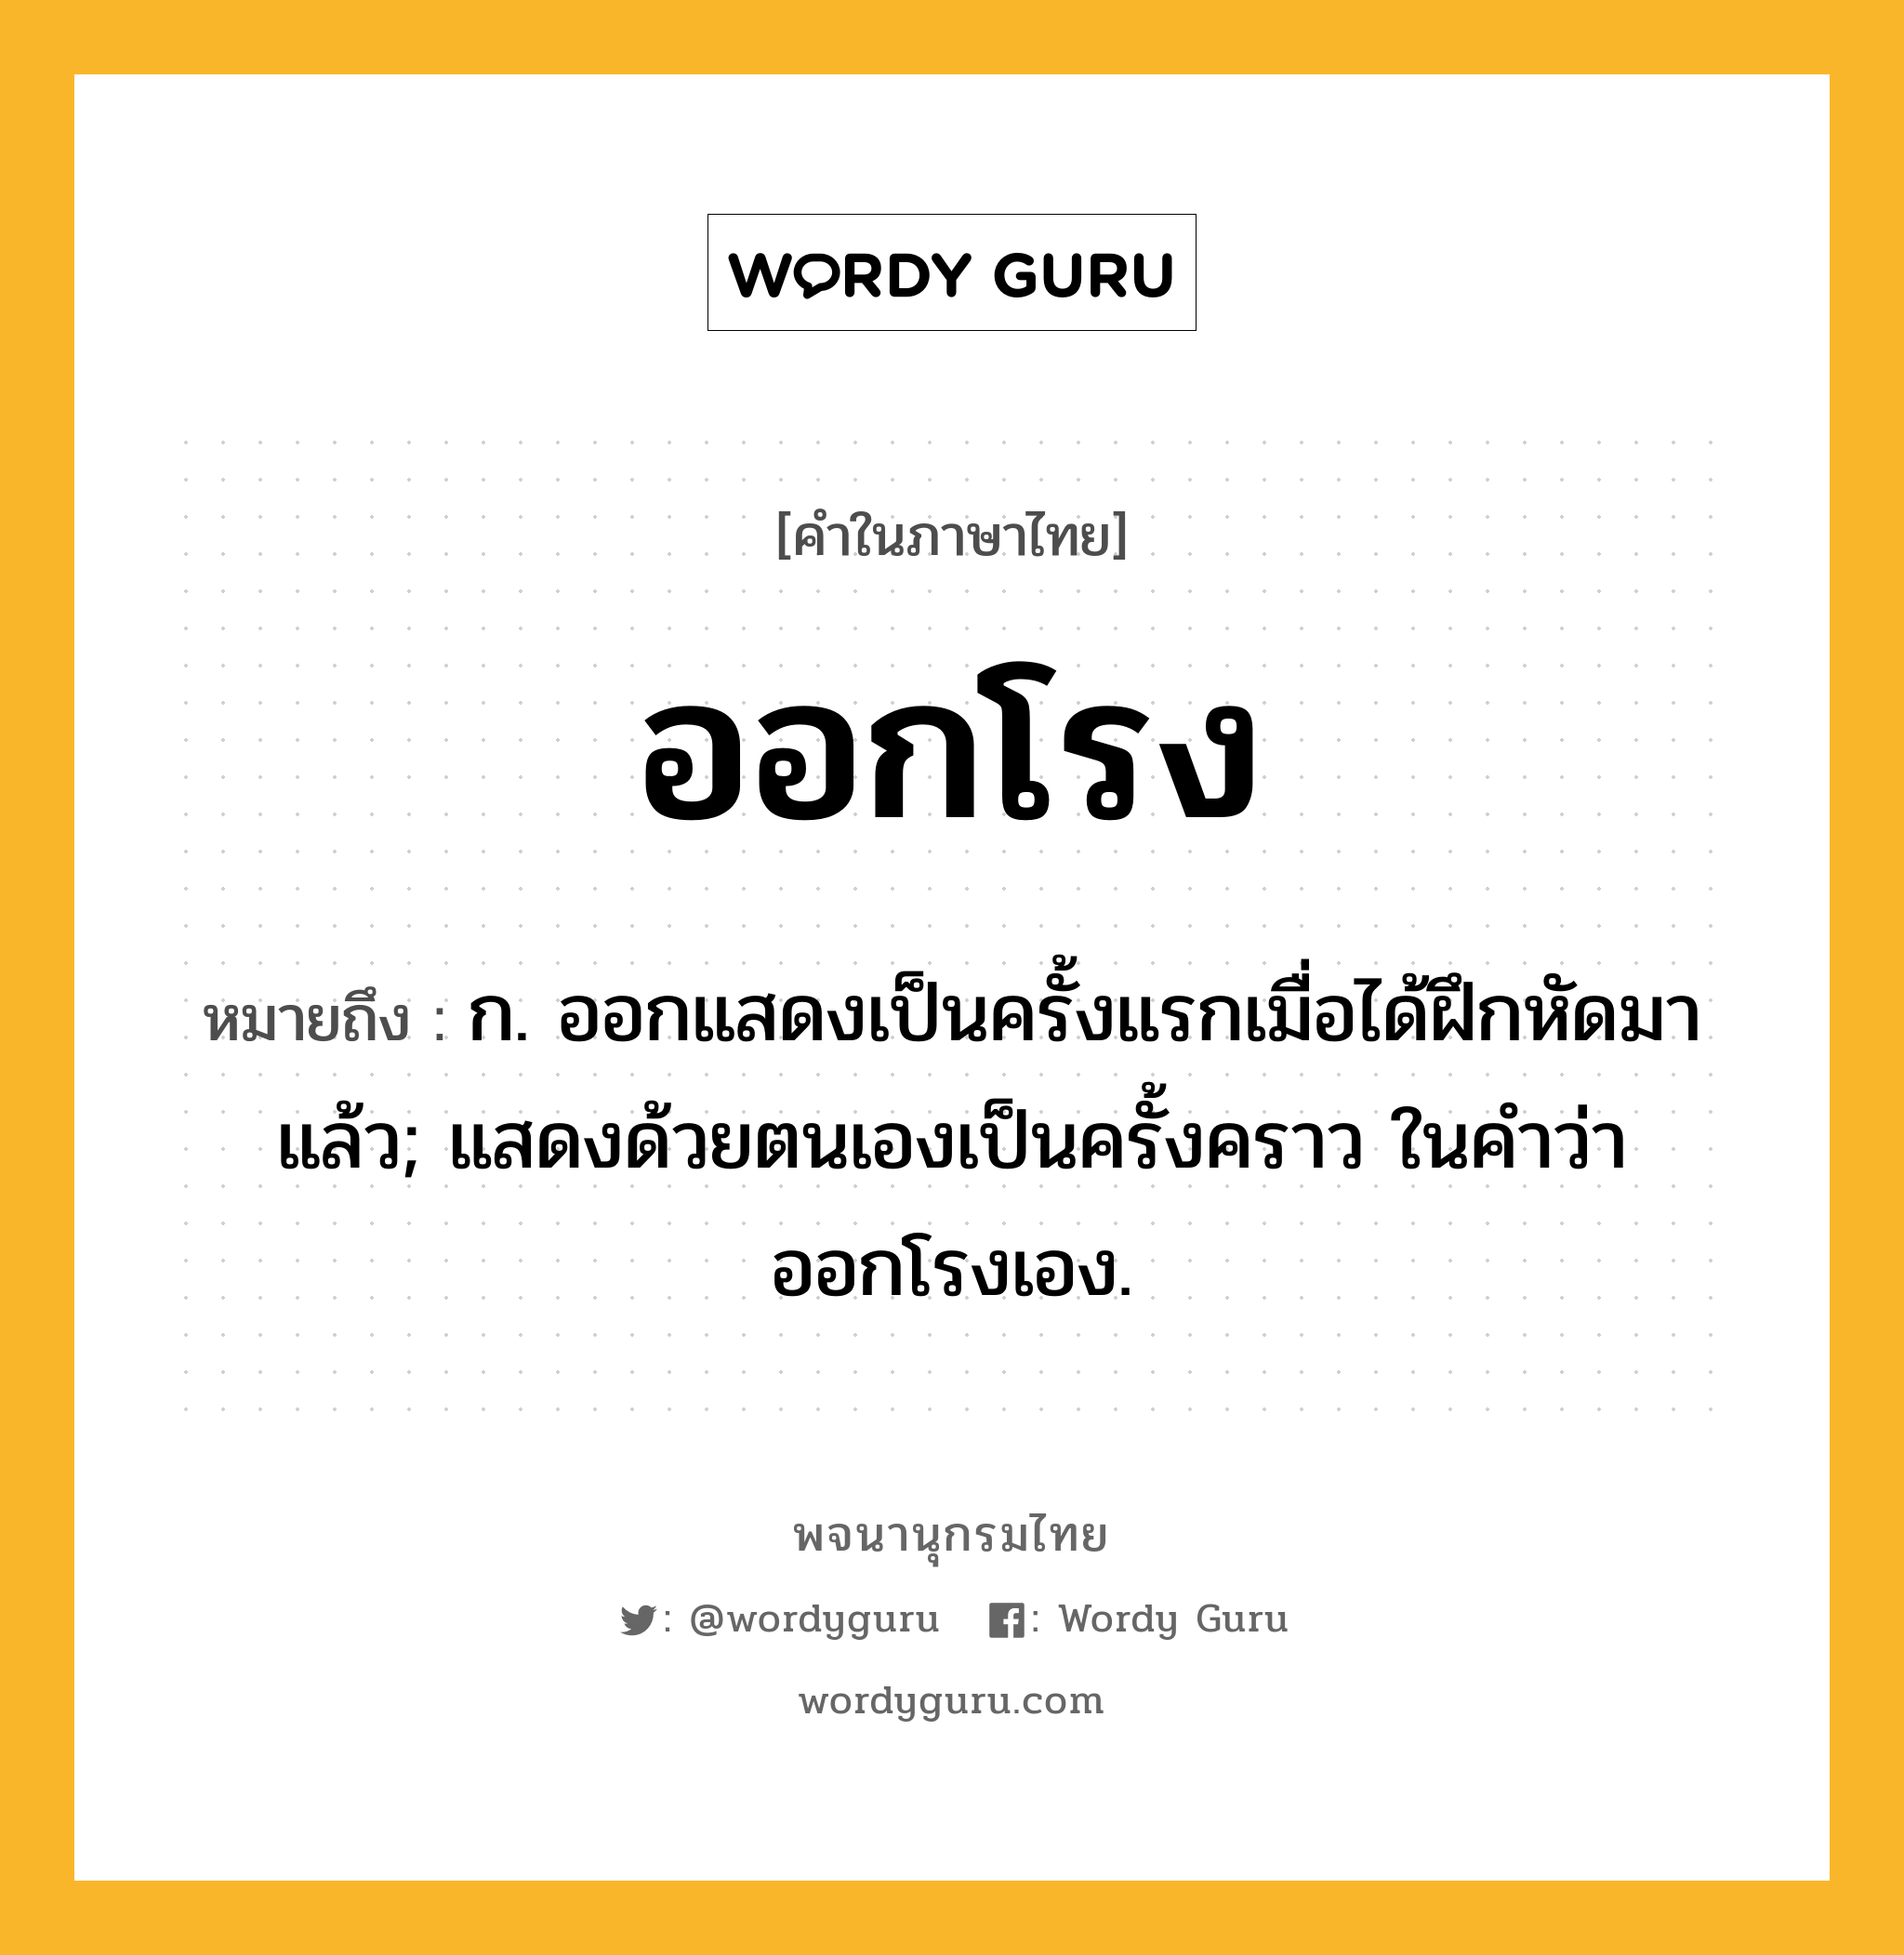 ออกโรง ความหมาย หมายถึงอะไร?, คำในภาษาไทย ออกโรง หมายถึง ก. ออกแสดงเป็นครั้งแรกเมื่อได้ฝึกหัดมาแล้ว; แสดงด้วยตนเองเป็นครั้งคราว ในคำว่า ออกโรงเอง.